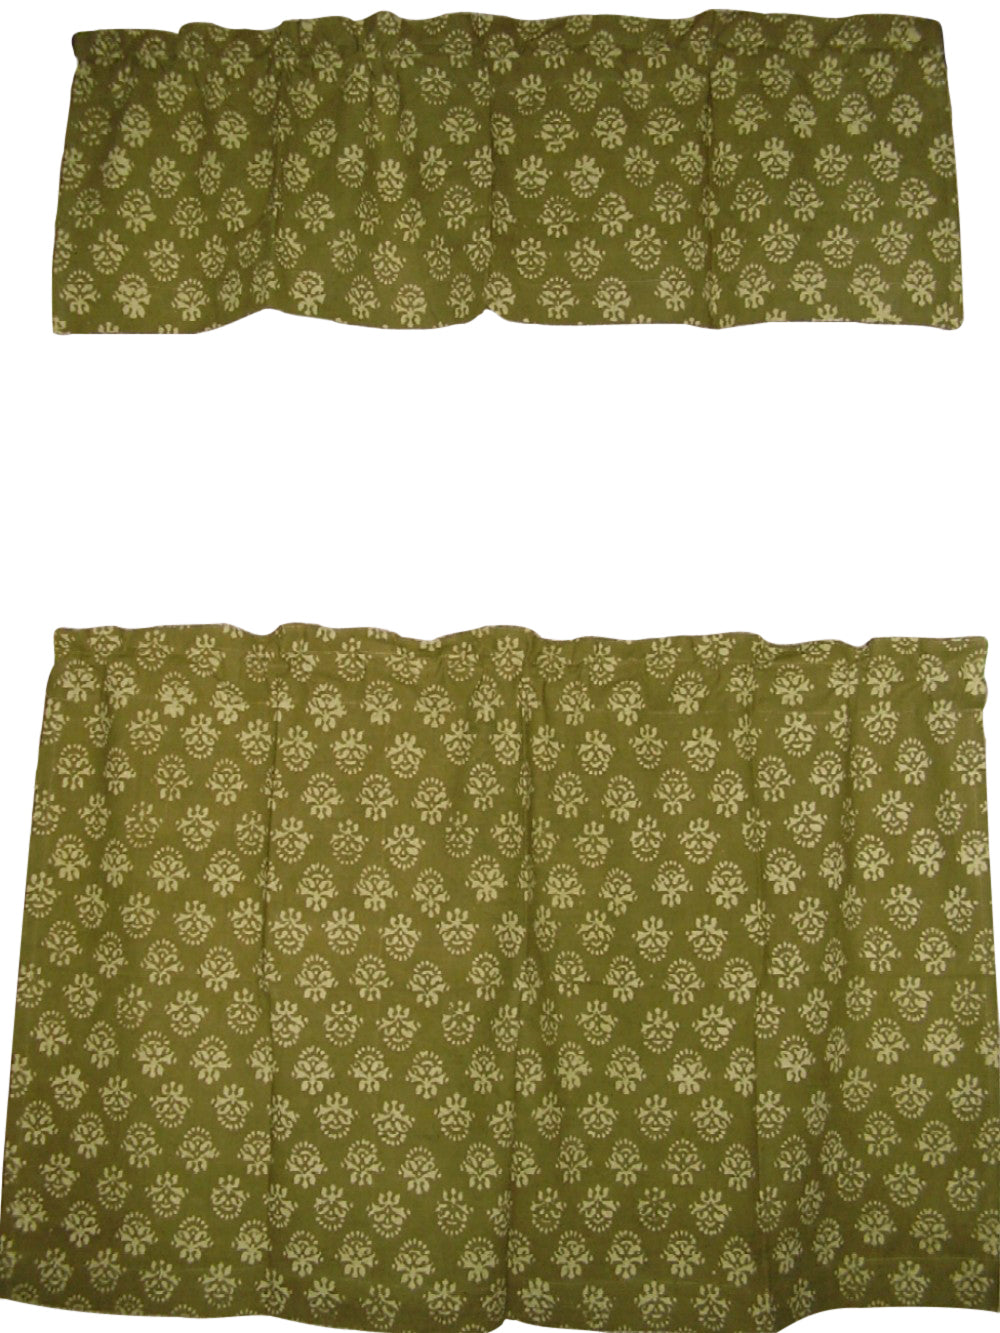 搭配帷幔印花棉質咖啡廳窗簾 44 英吋 x 30 英吋橄欖綠 